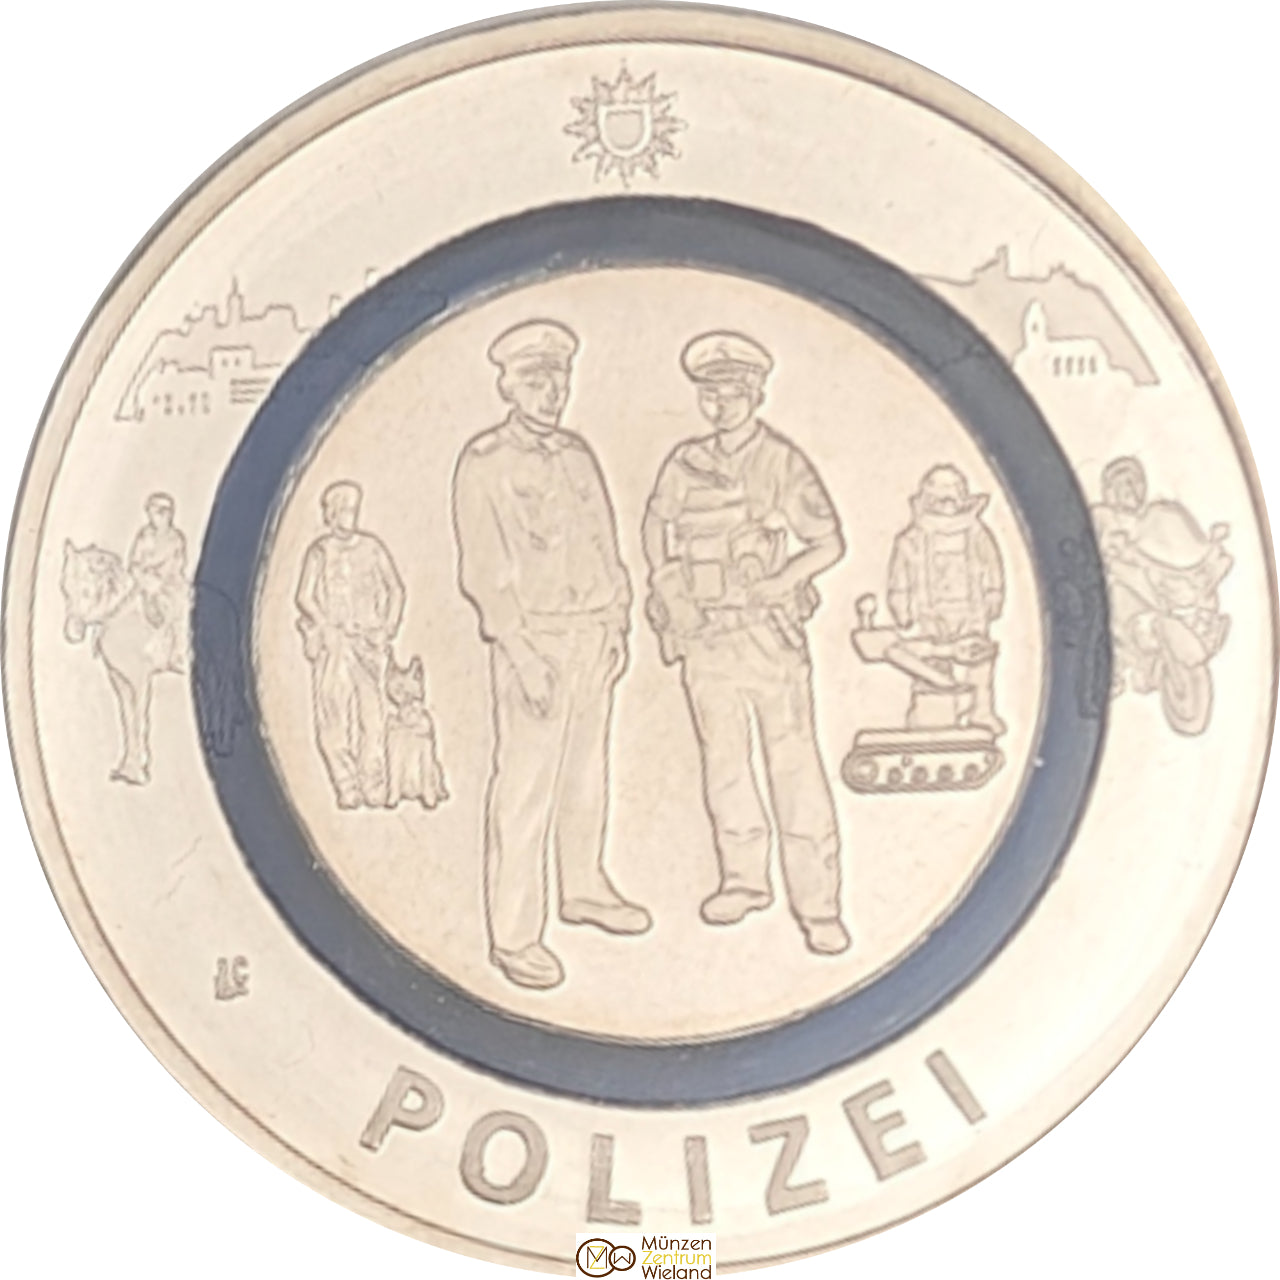 Polizei - Im Dienst der Gesellschaft, mit blauem Polymerring, Buchstabe nach Verfügbarkeit